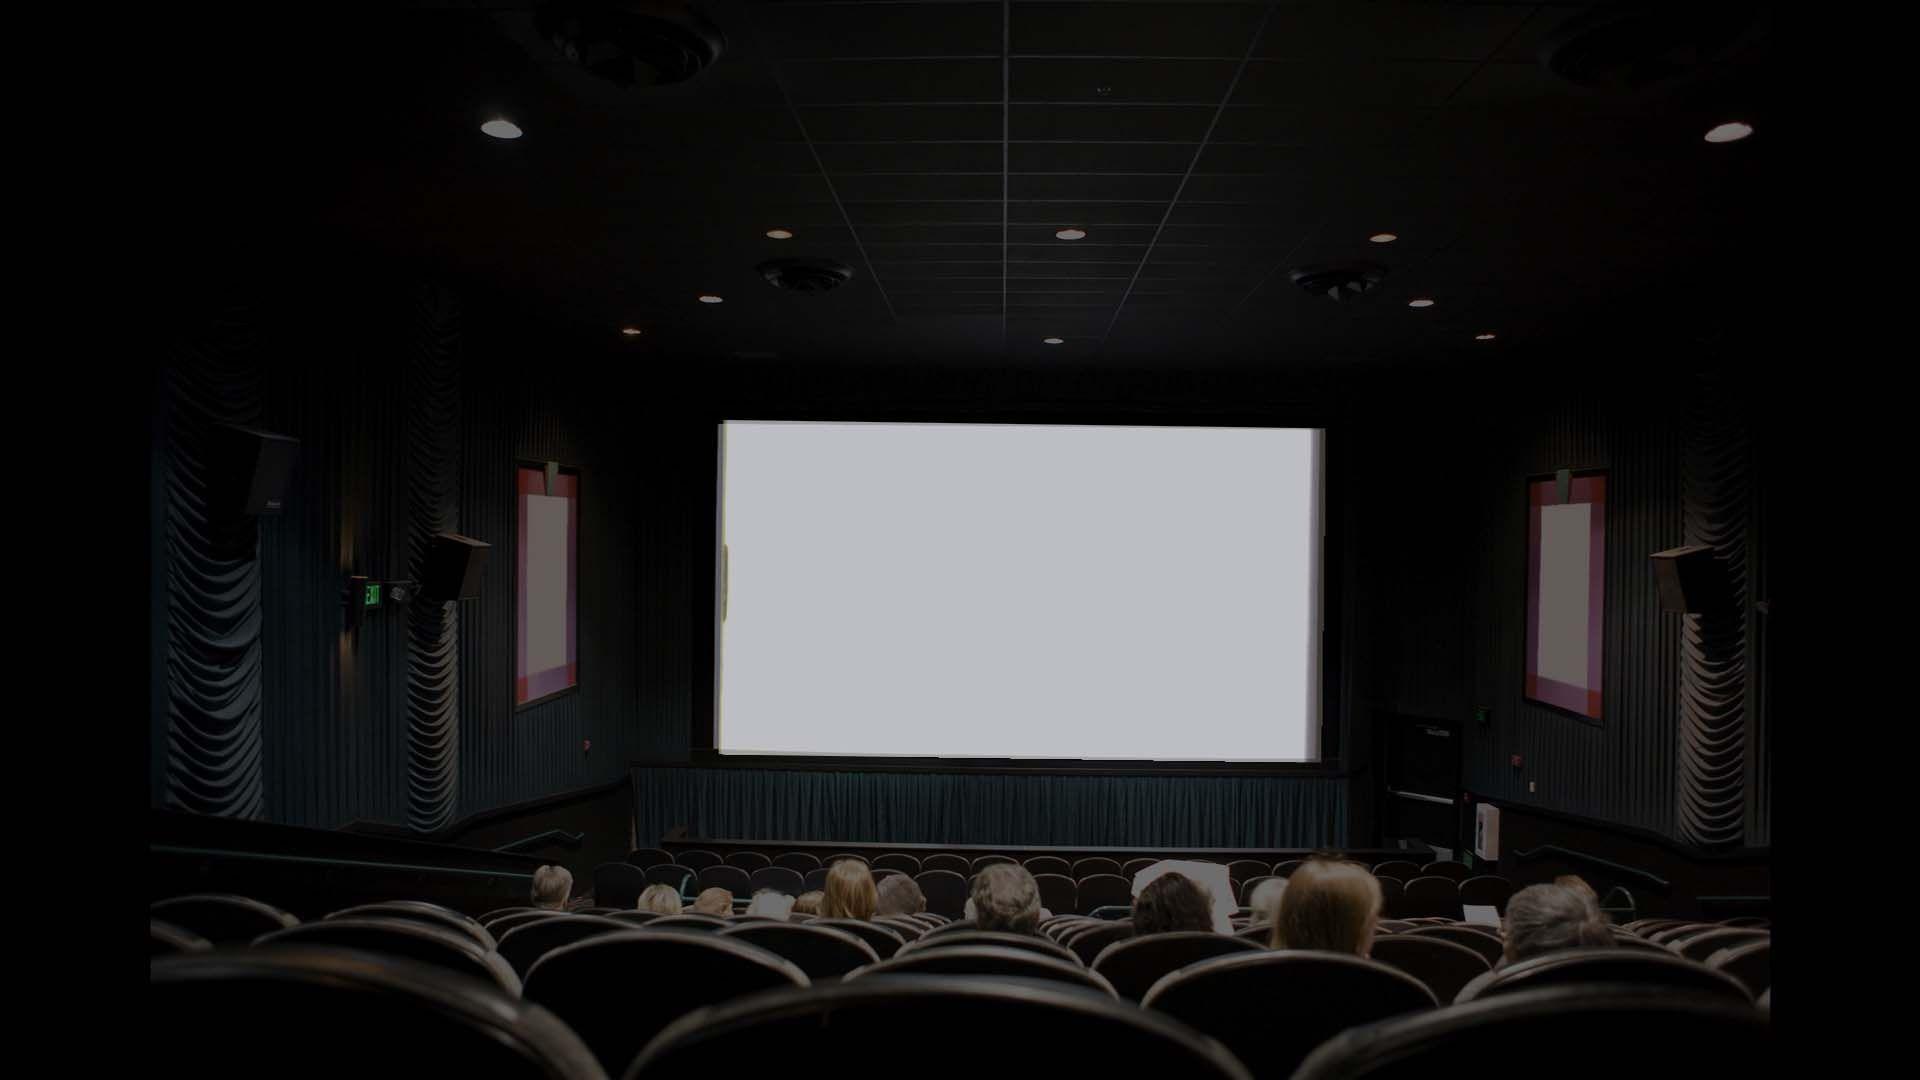 عکس زمینه سفید و سیاه سالن تئاتر برای صفحه کامپیوتر 